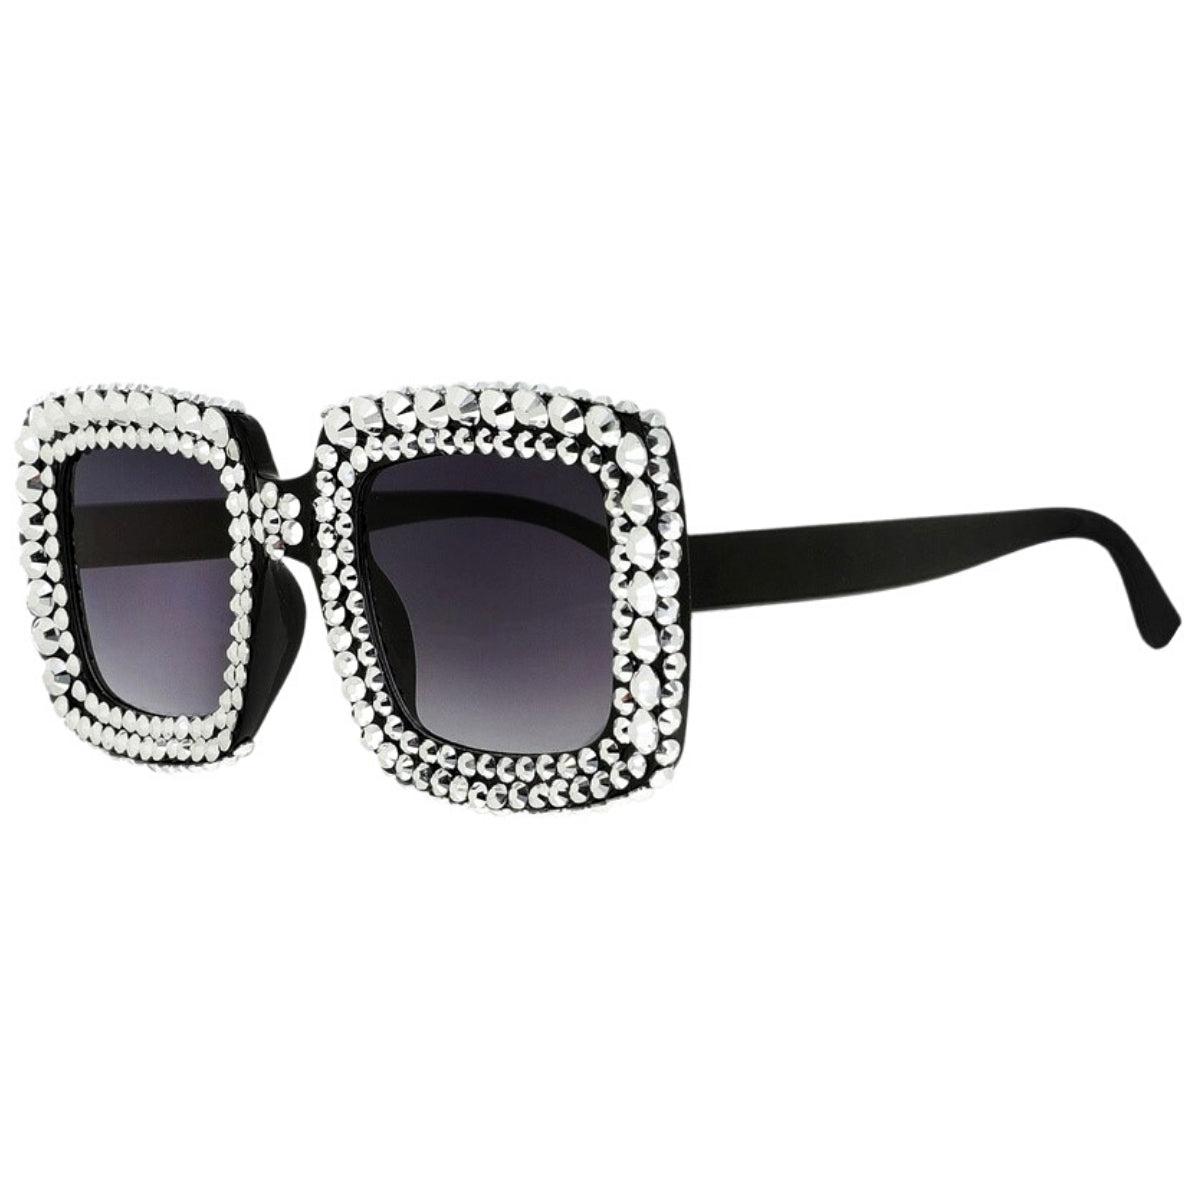 Sparkly Silver Stone Square Sunglasses